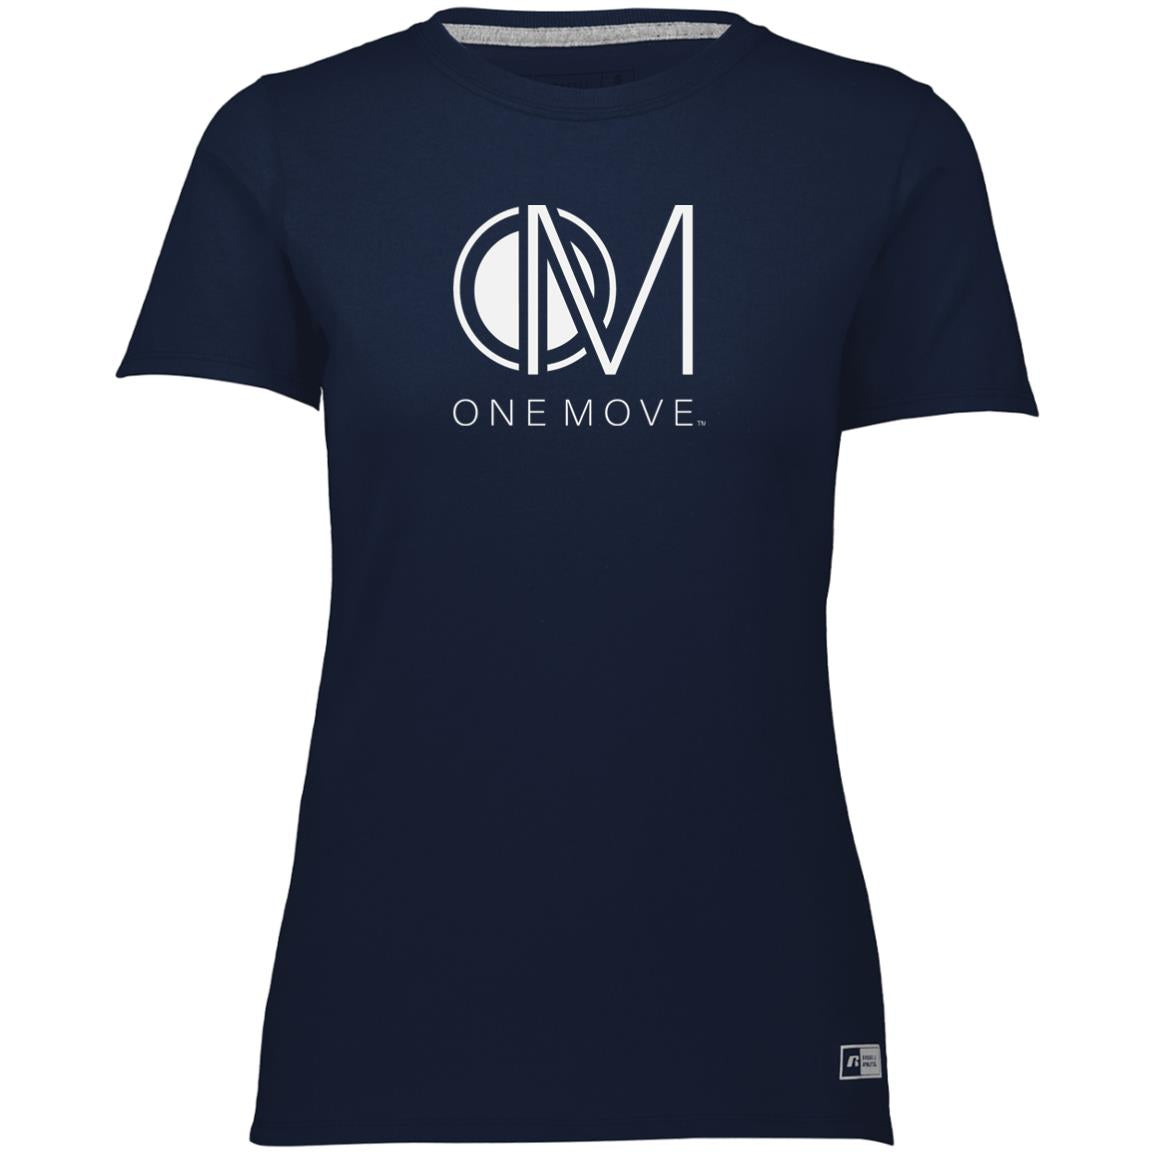 Camiseta Essential Dri-Power para mujer OM-wht